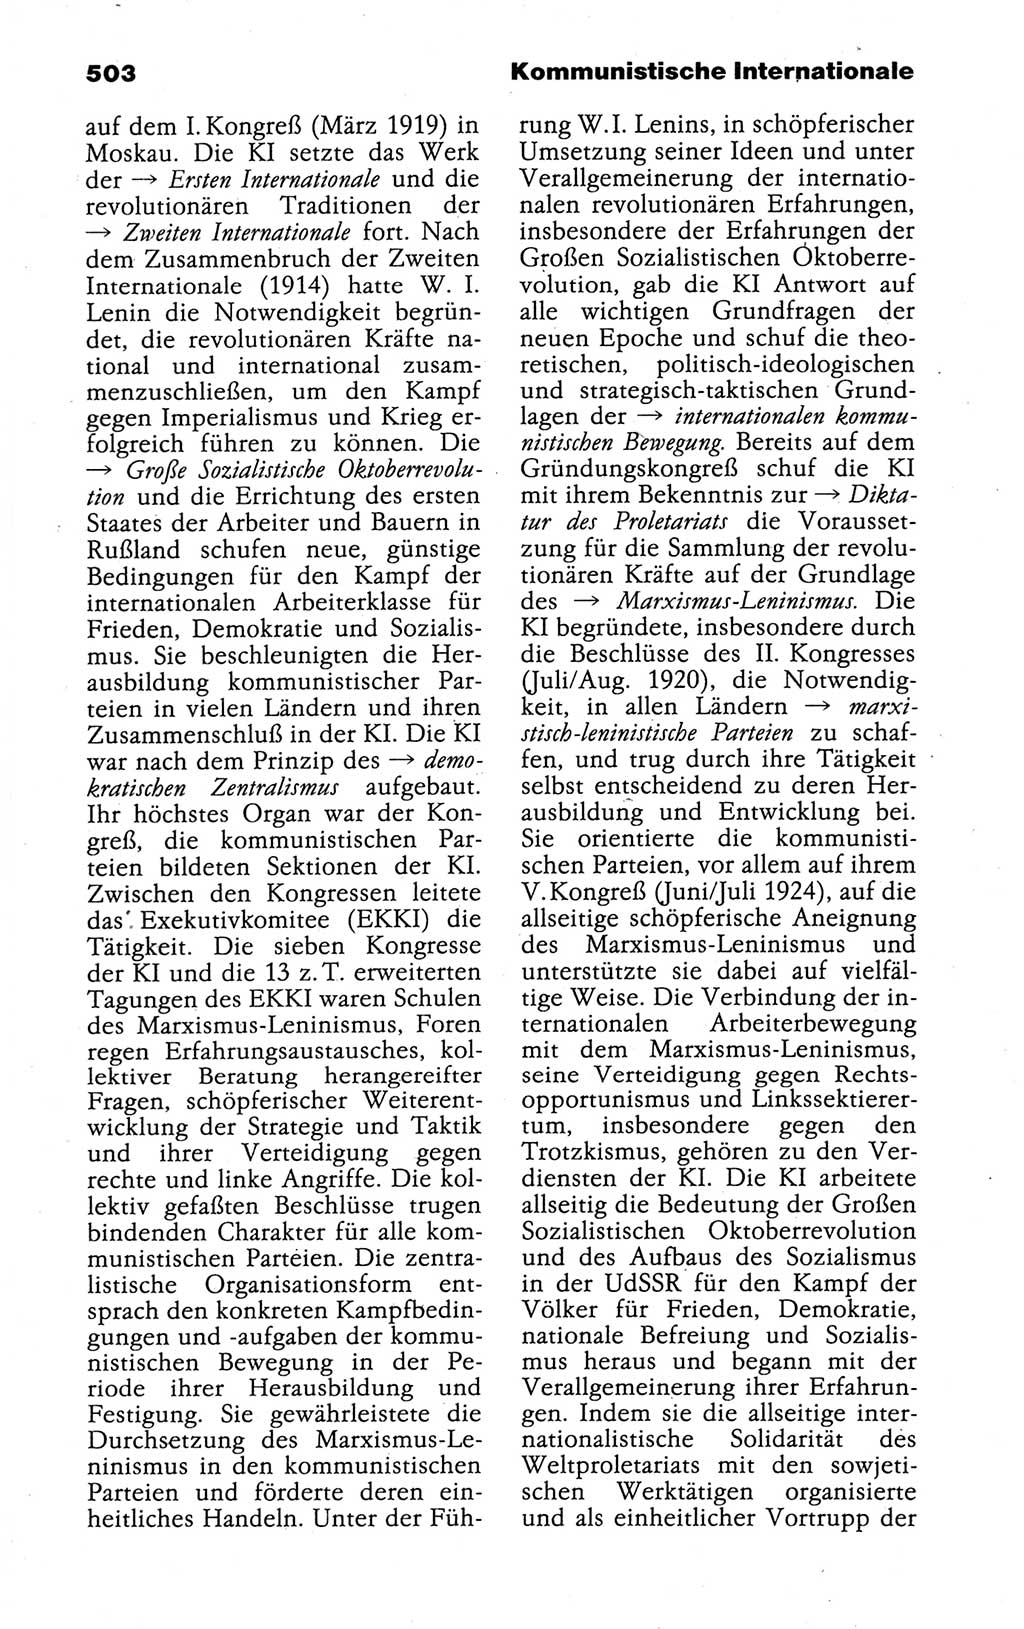 Kleines politisches Wörterbuch [Deutsche Demokratische Republik (DDR)] 1988, Seite 503 (Kl. pol. Wb. DDR 1988, S. 503)